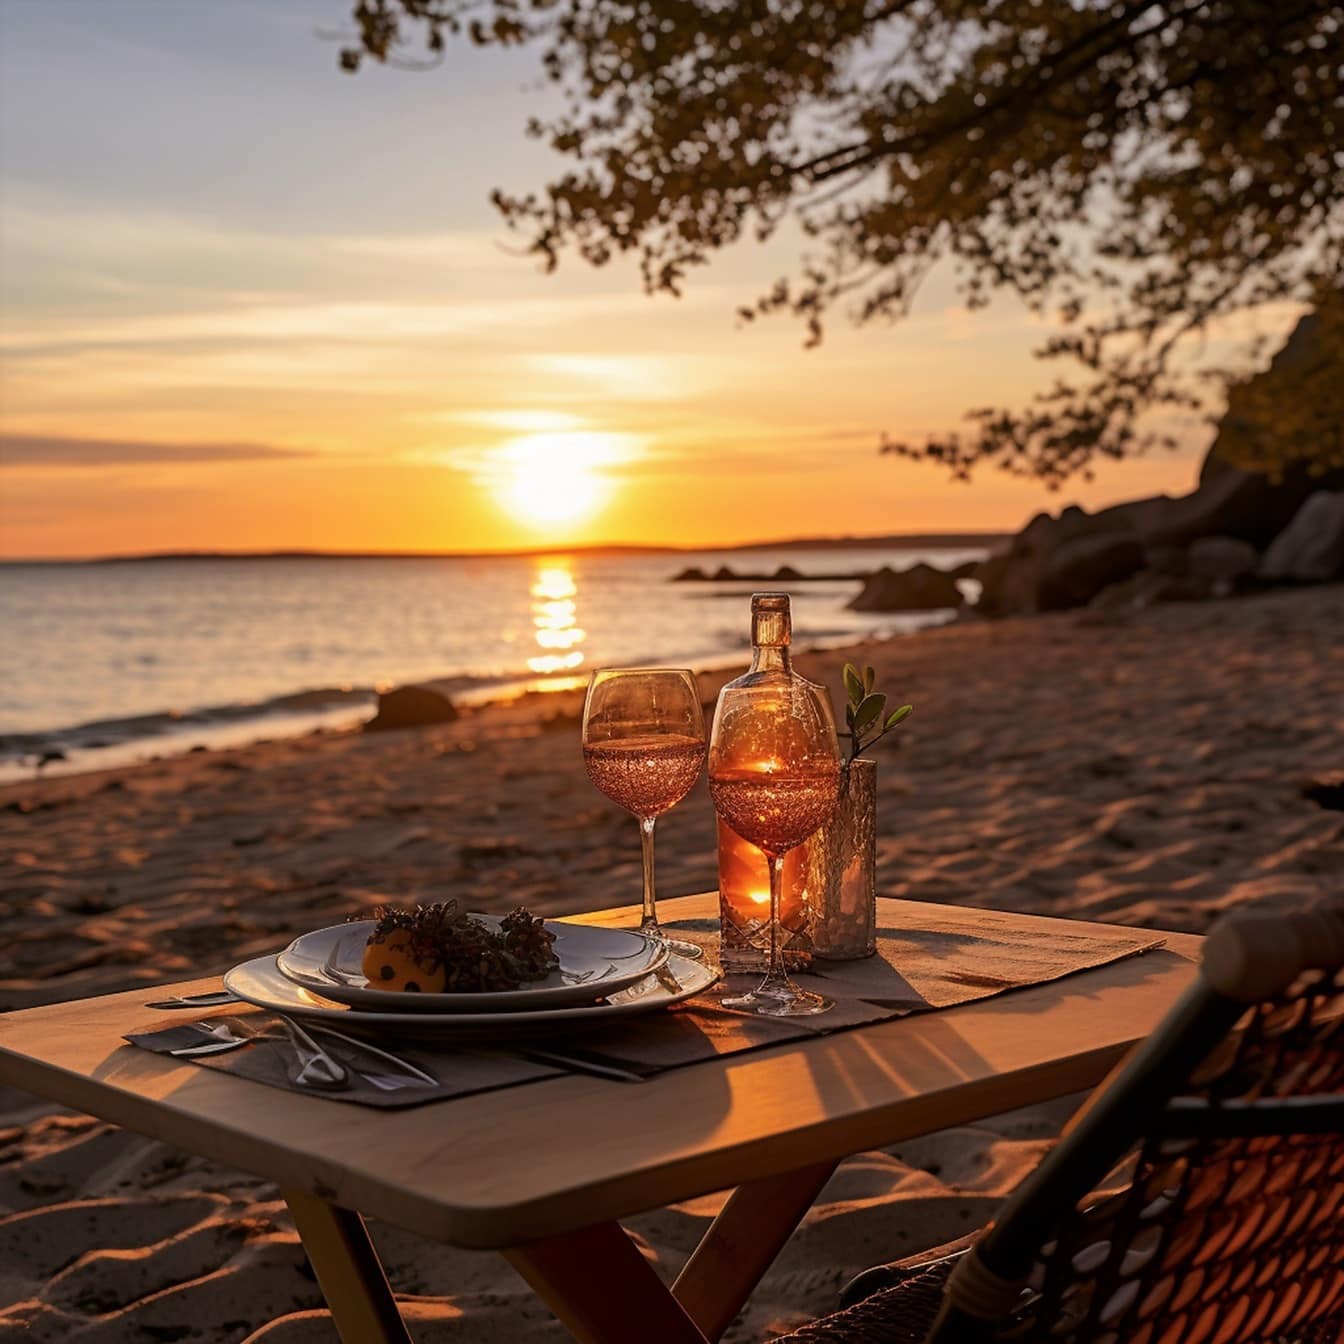 Romantische eettafel met witte wijn aan het strand in zonsondergang